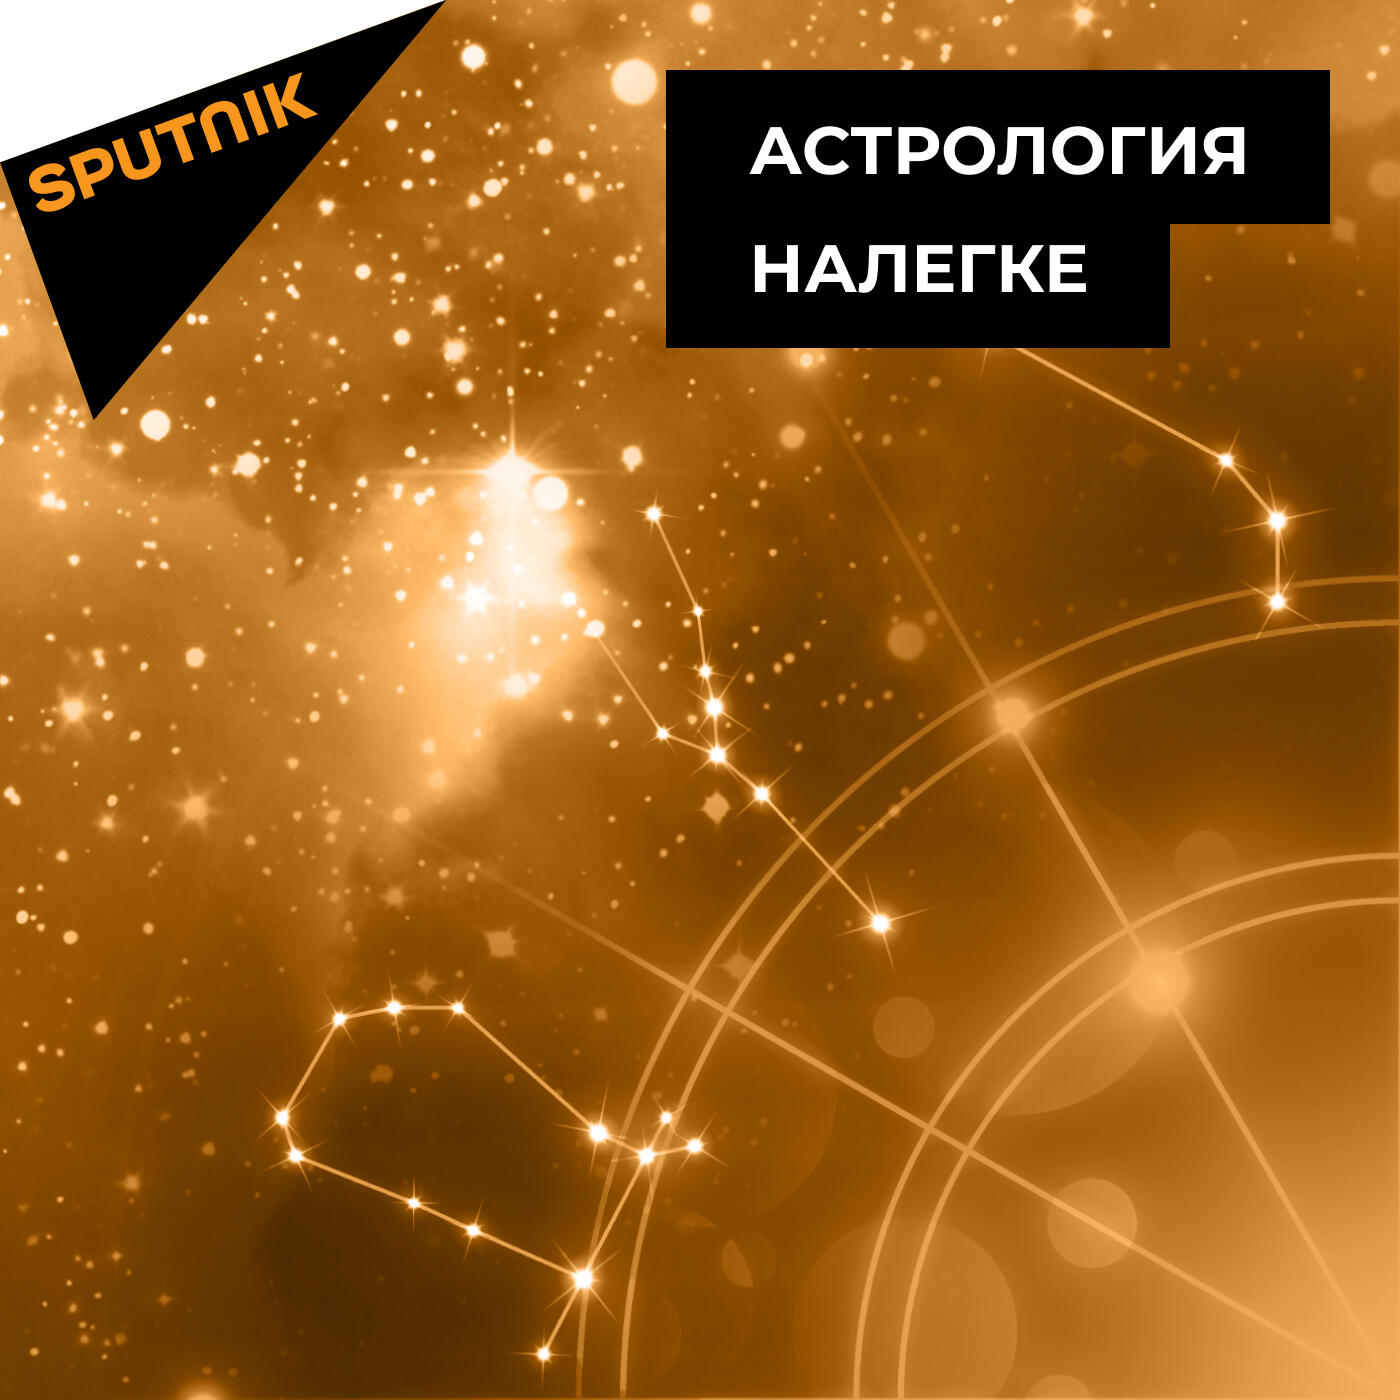 Астрология налегке:Радио Sputnik